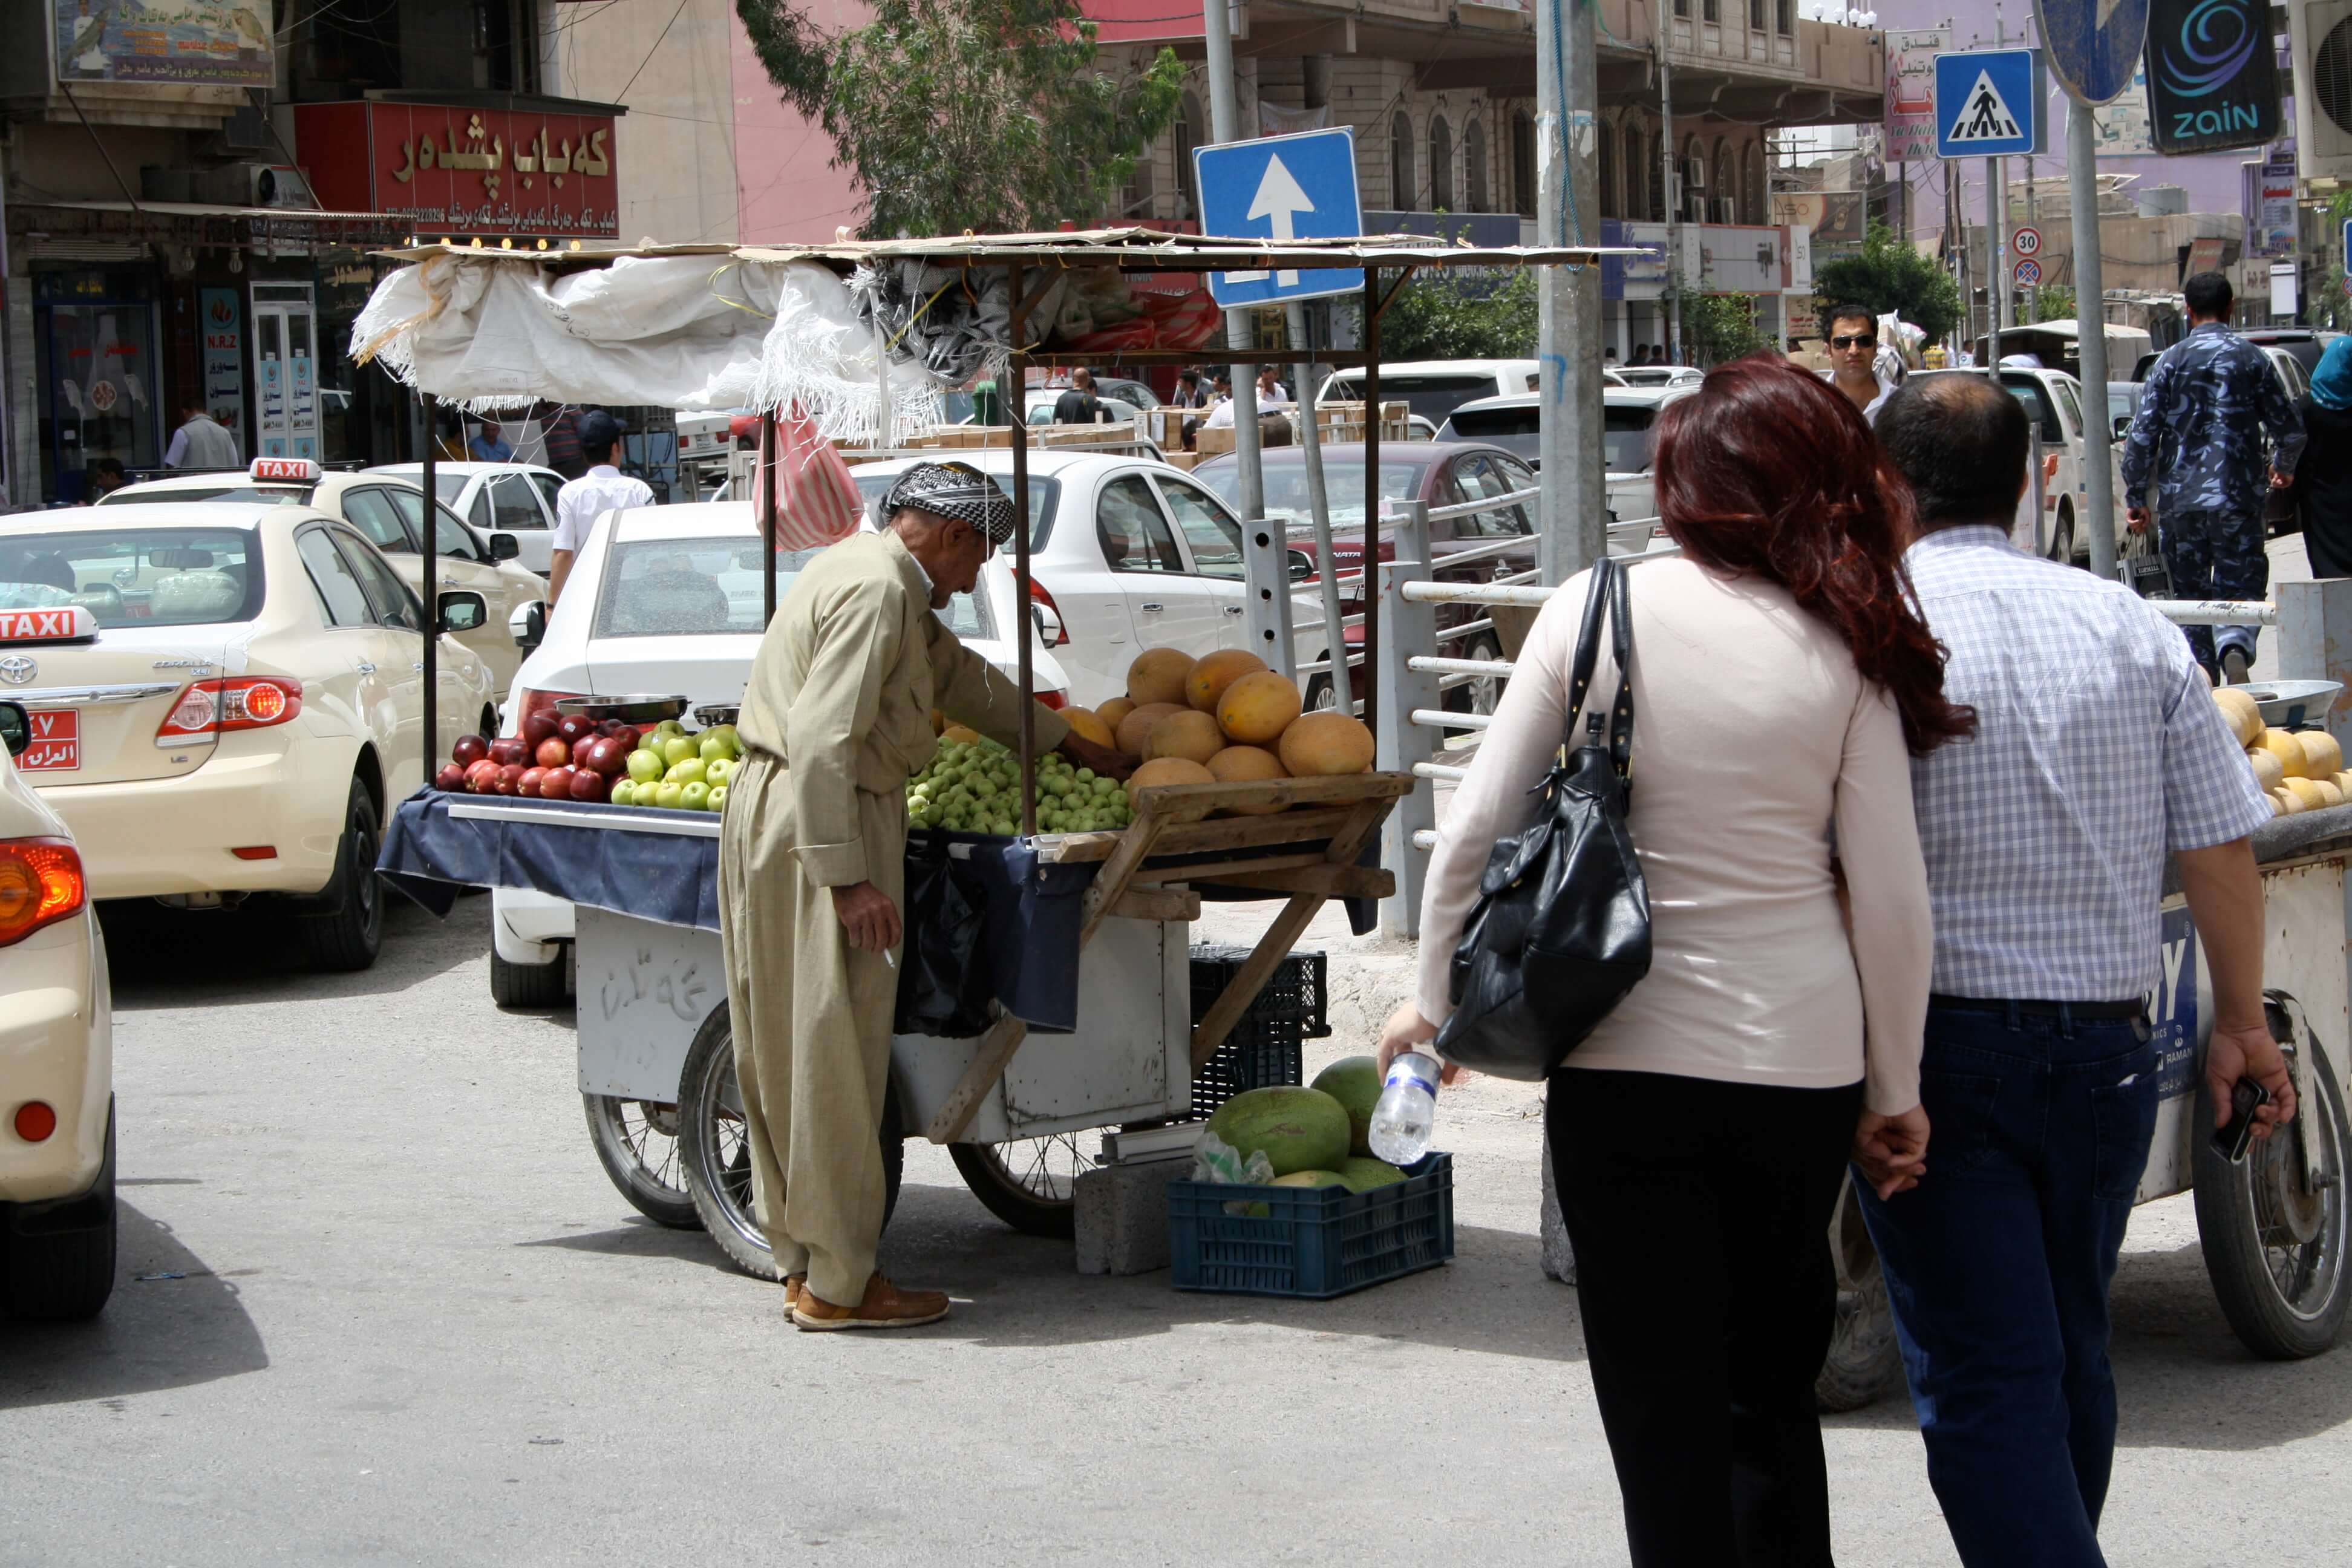 irak, marktstalletje eten op straat.jpg